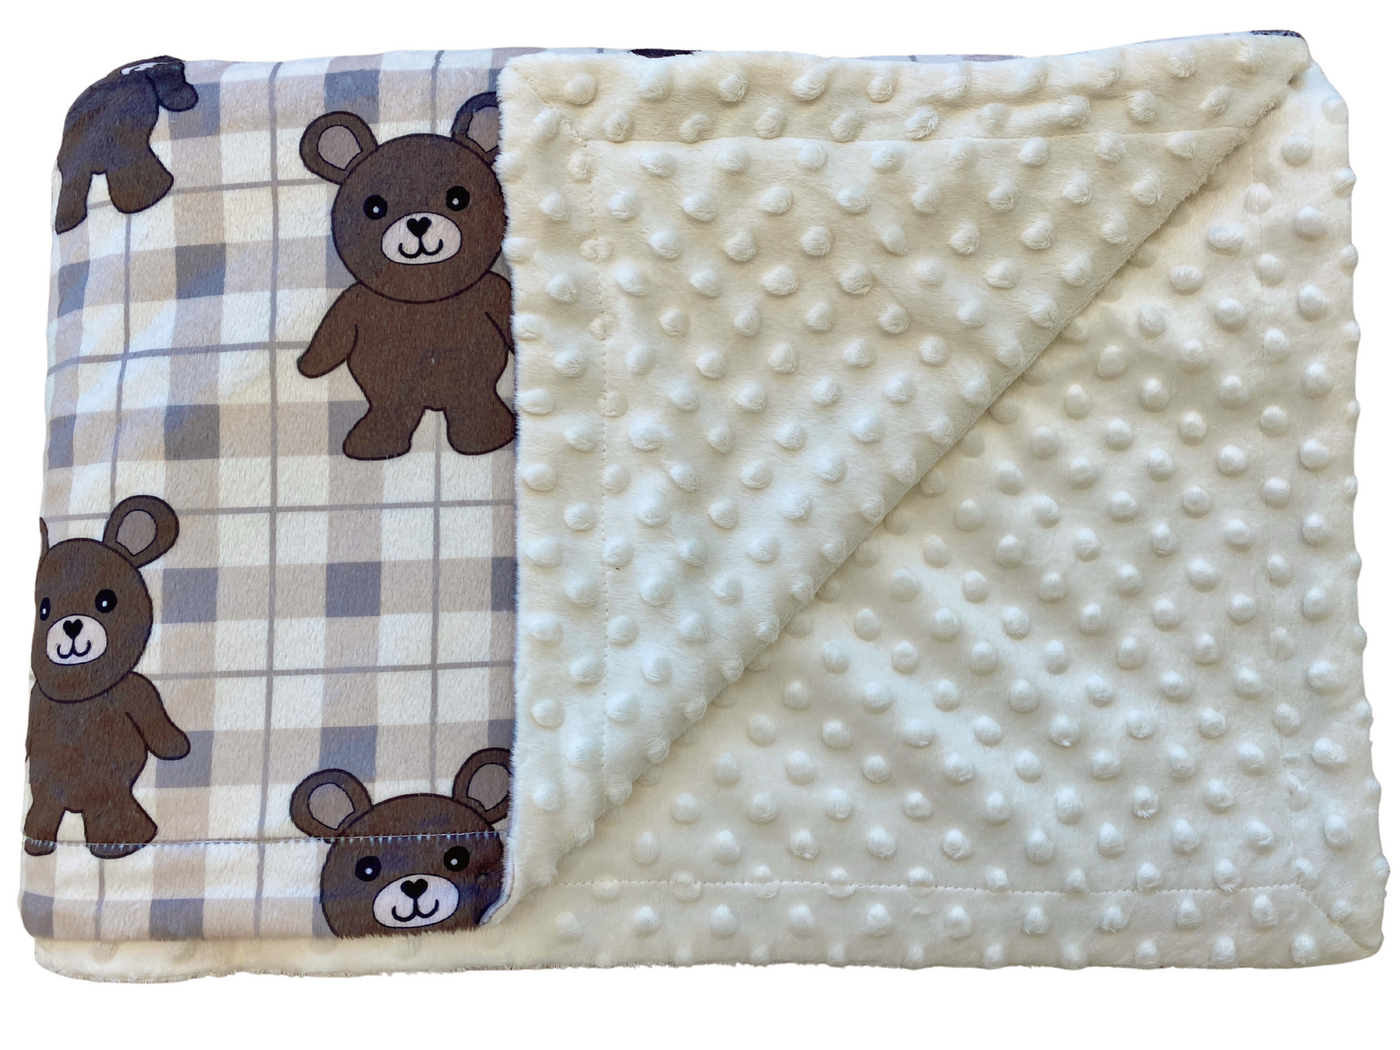 Baby blanket: Plaid Cute Bears